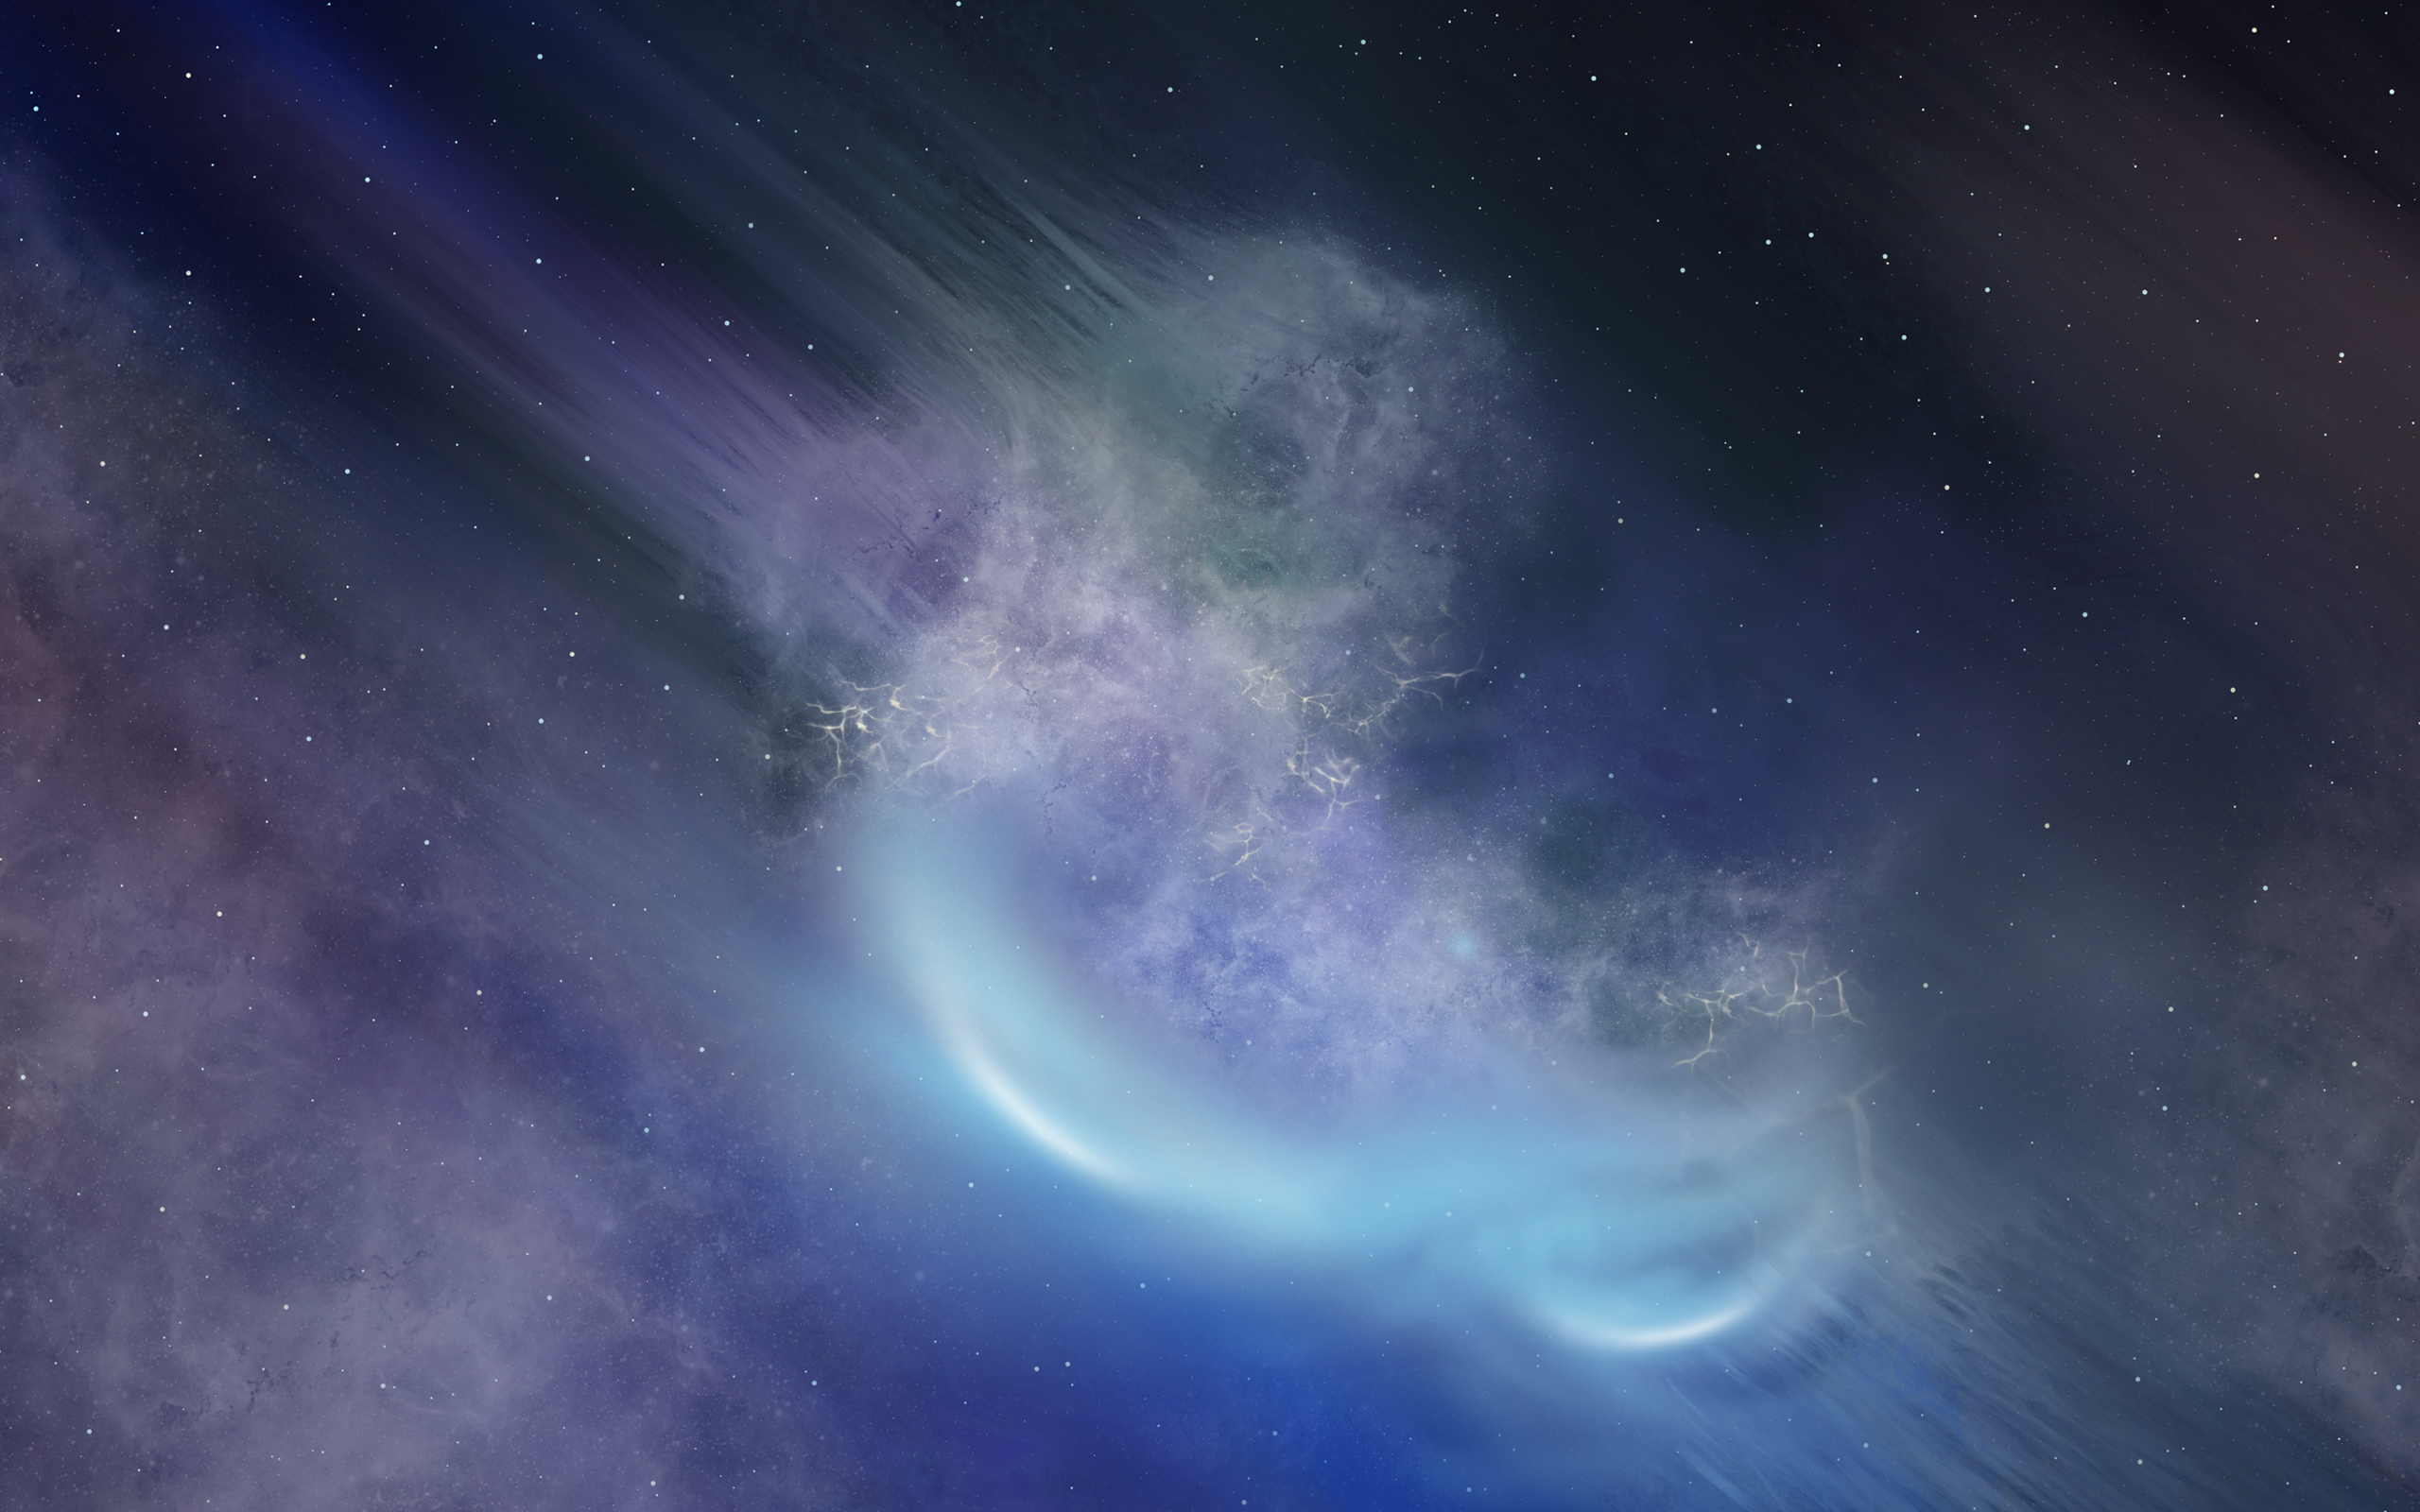 Nebula Stars661656789 - Nebula Stars - Universe, Stars, Nebula, Galaxy